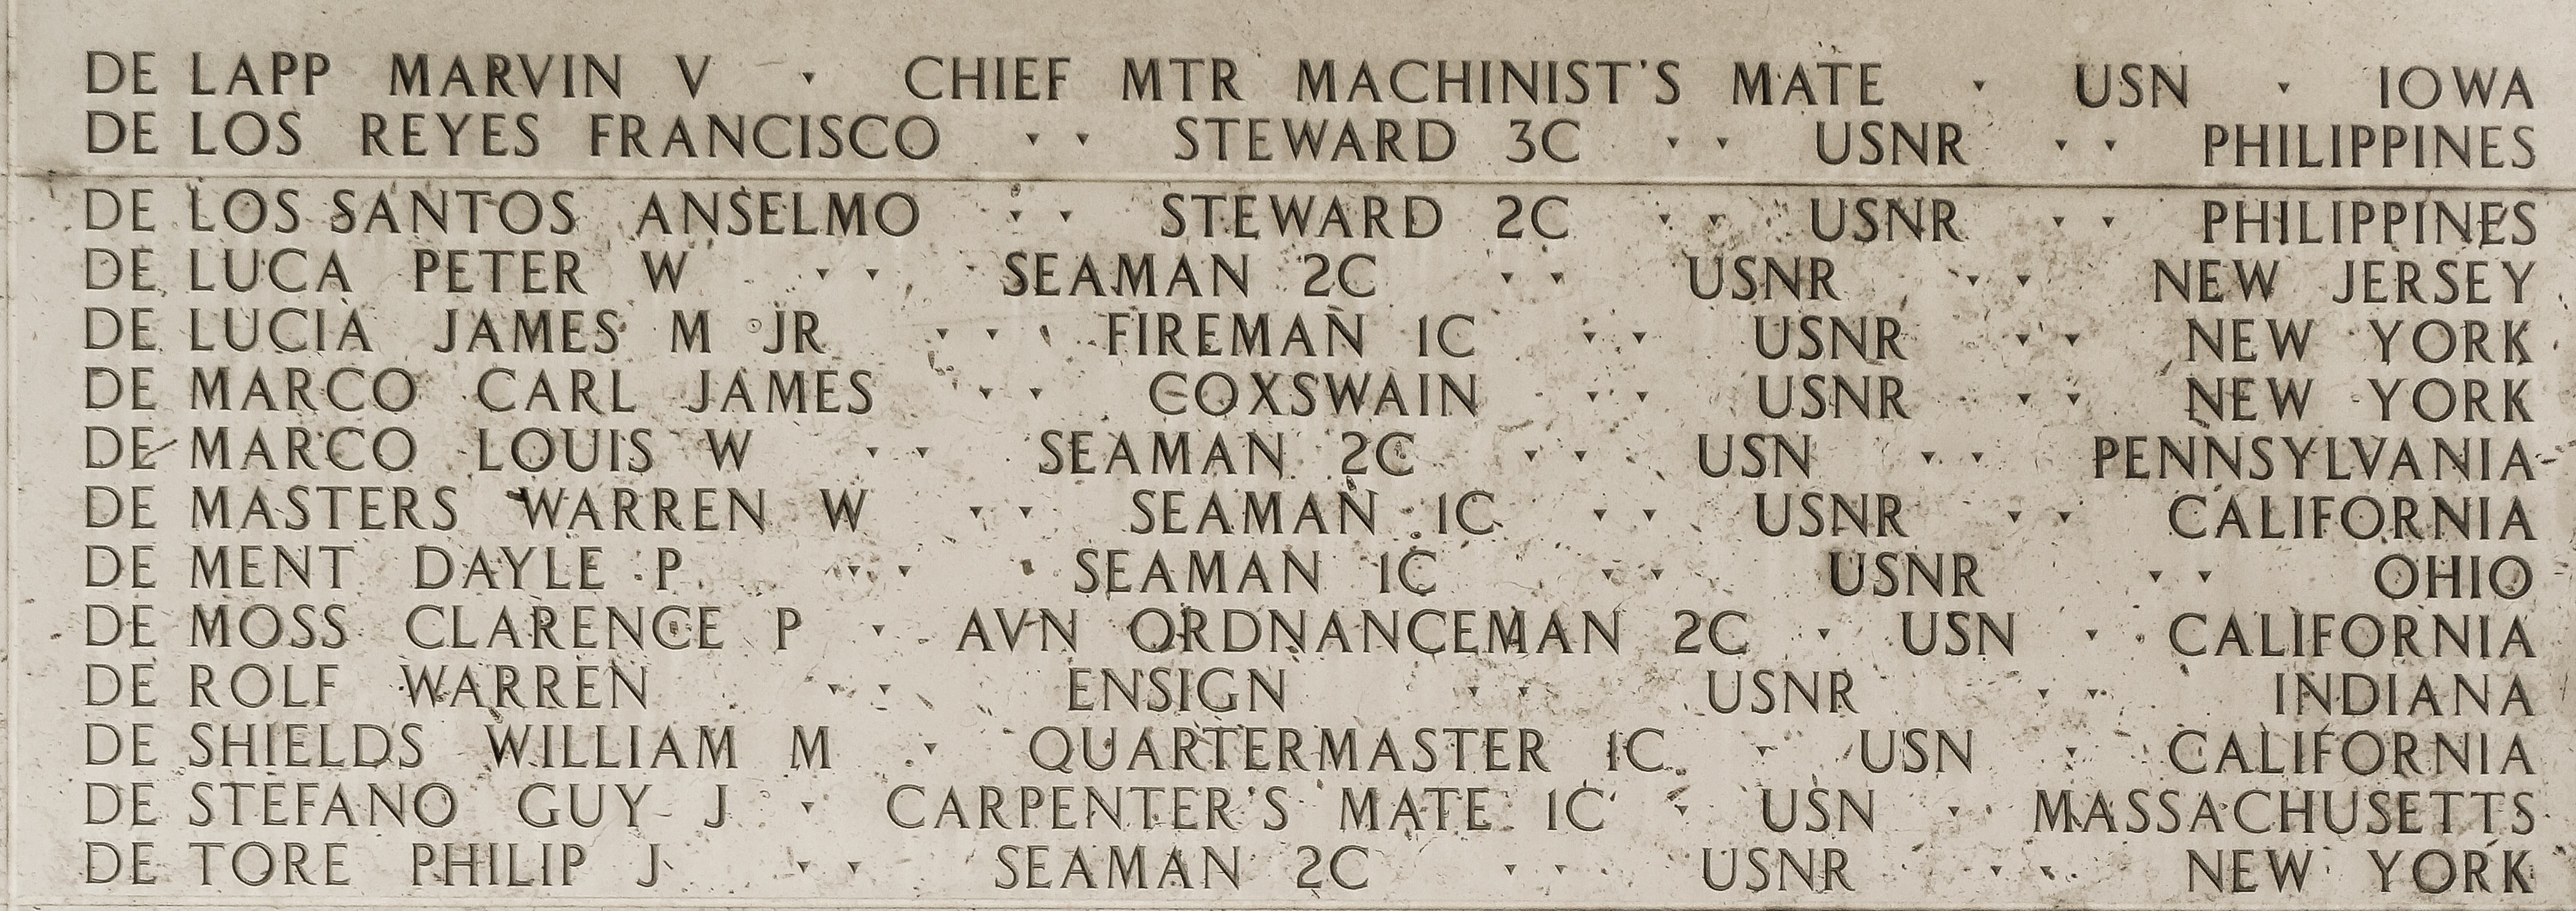 Peter W. De Luca, Seaman Second Class